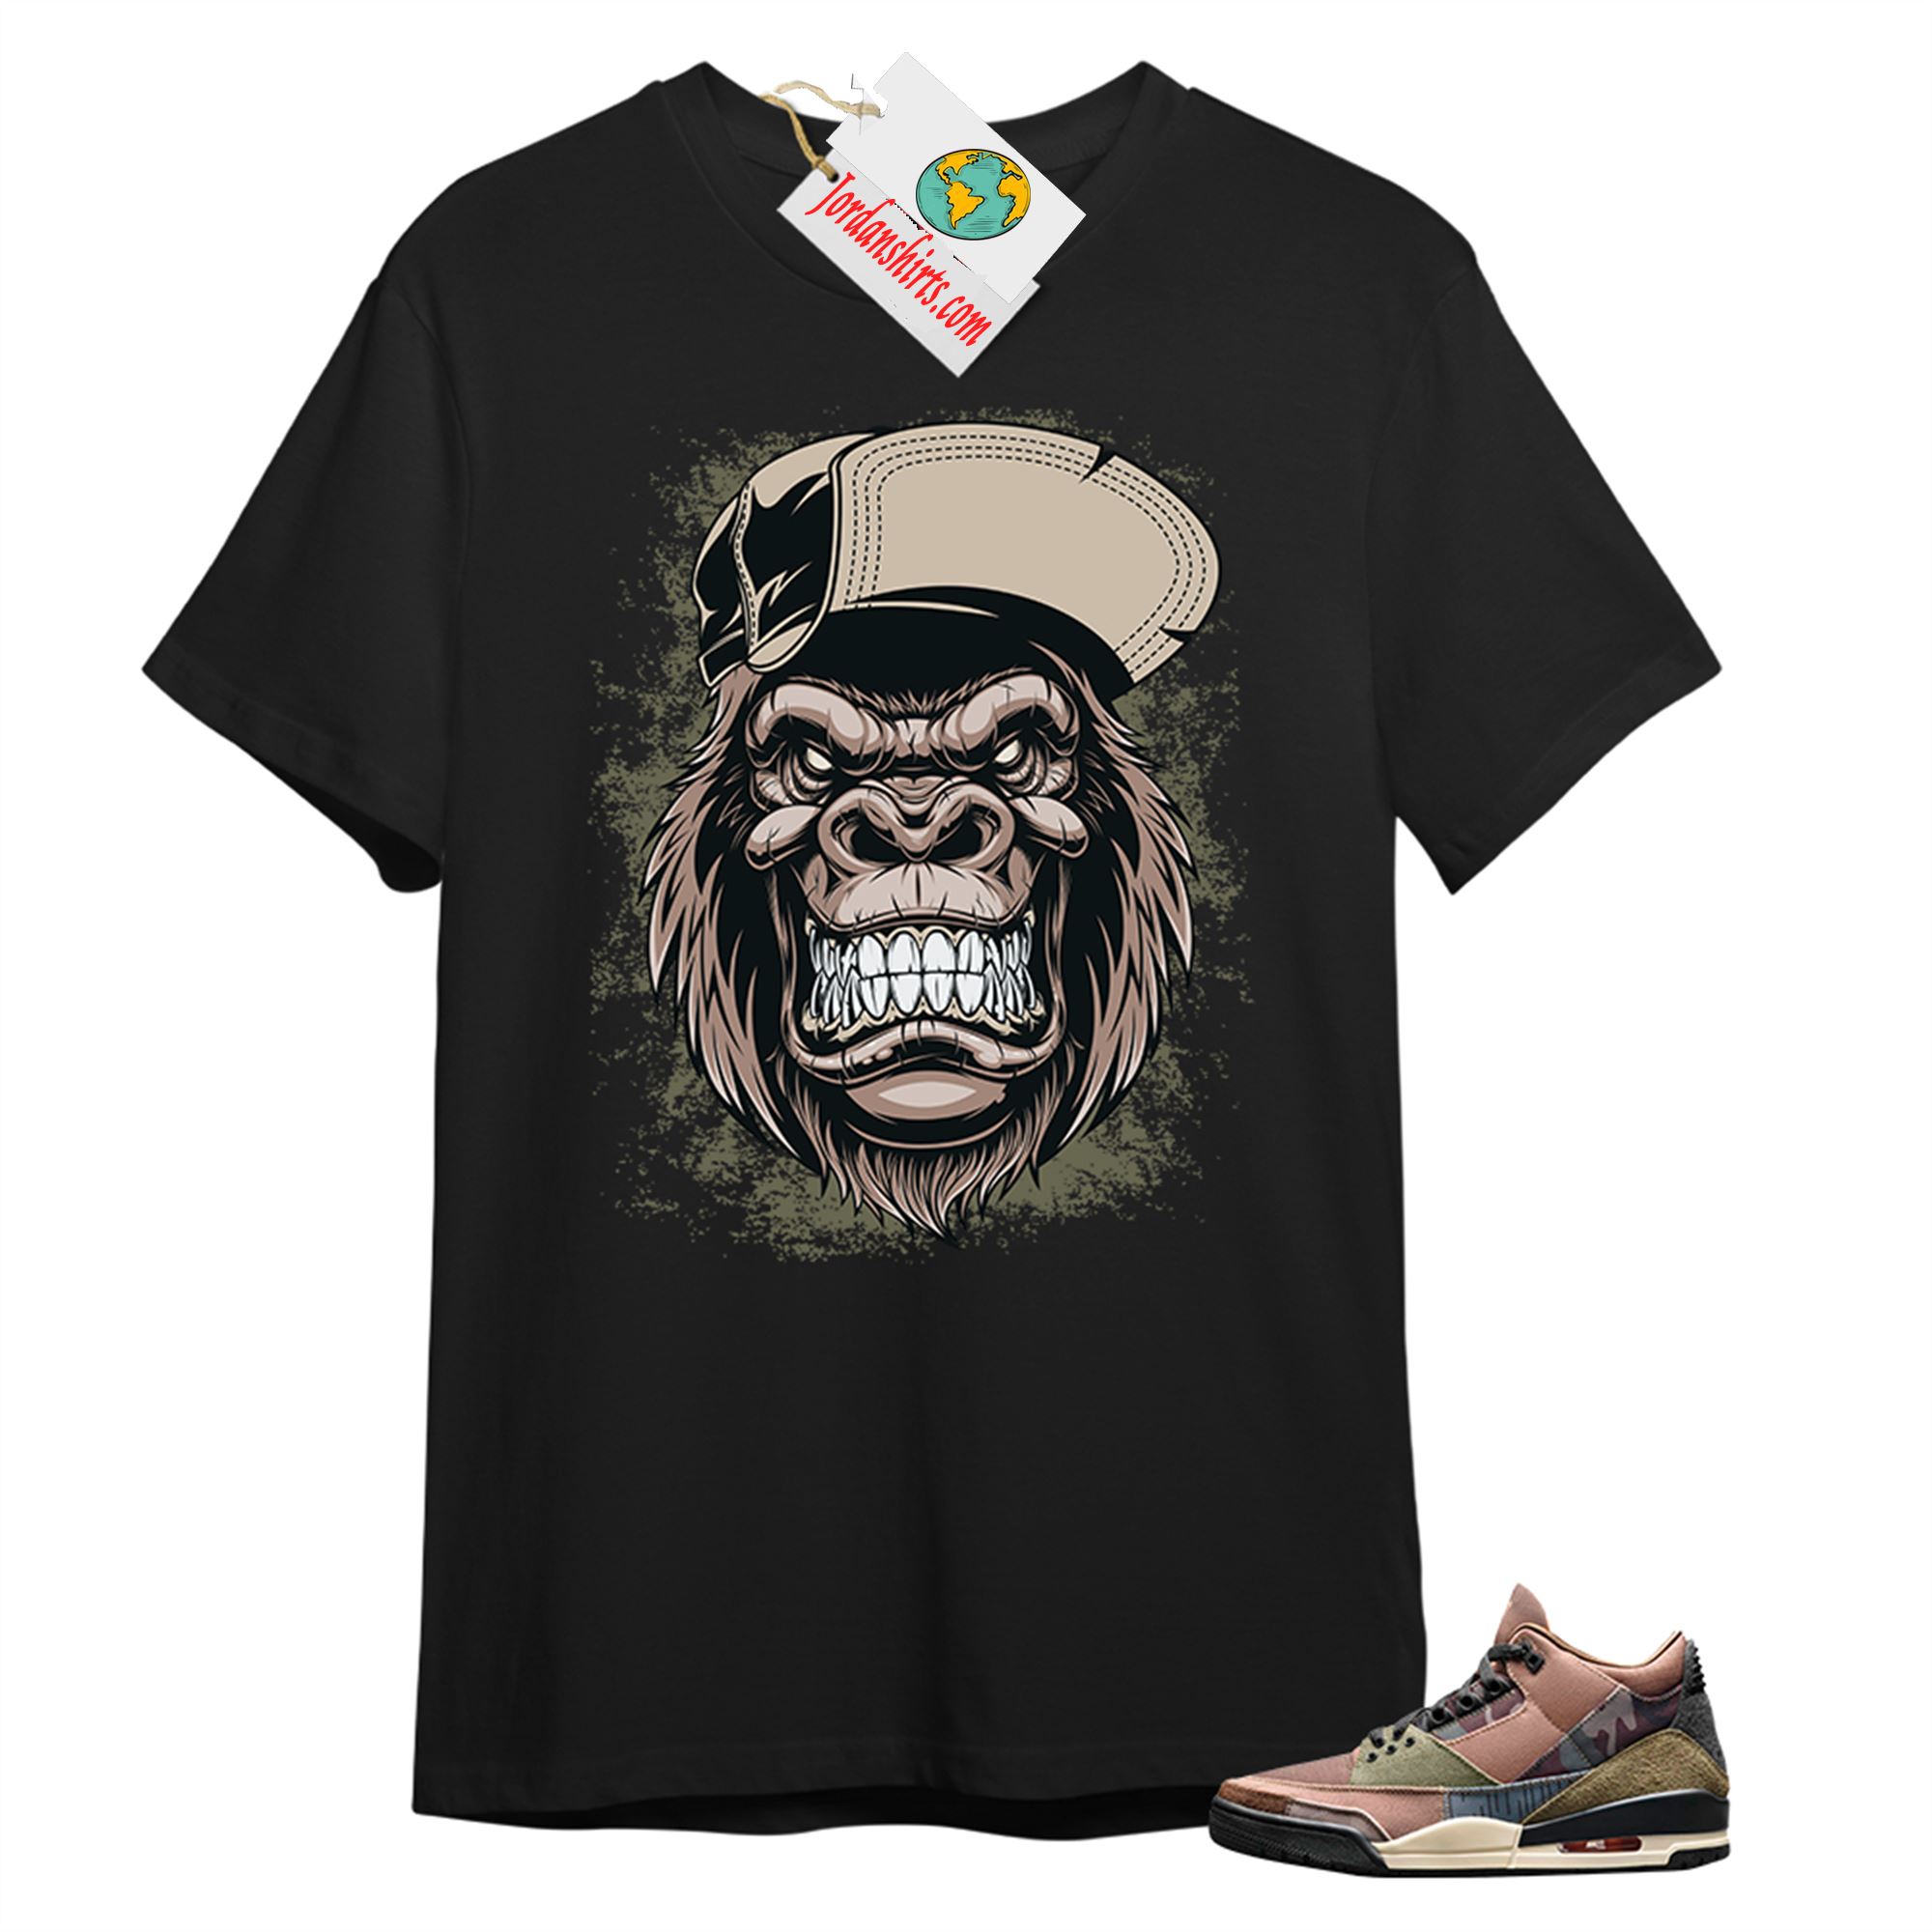 Jordan 3 Shirt, Ferocious Gorilla Black T-shirt Air Jordan 3 Camo 3s Plus Size Up To 5xl